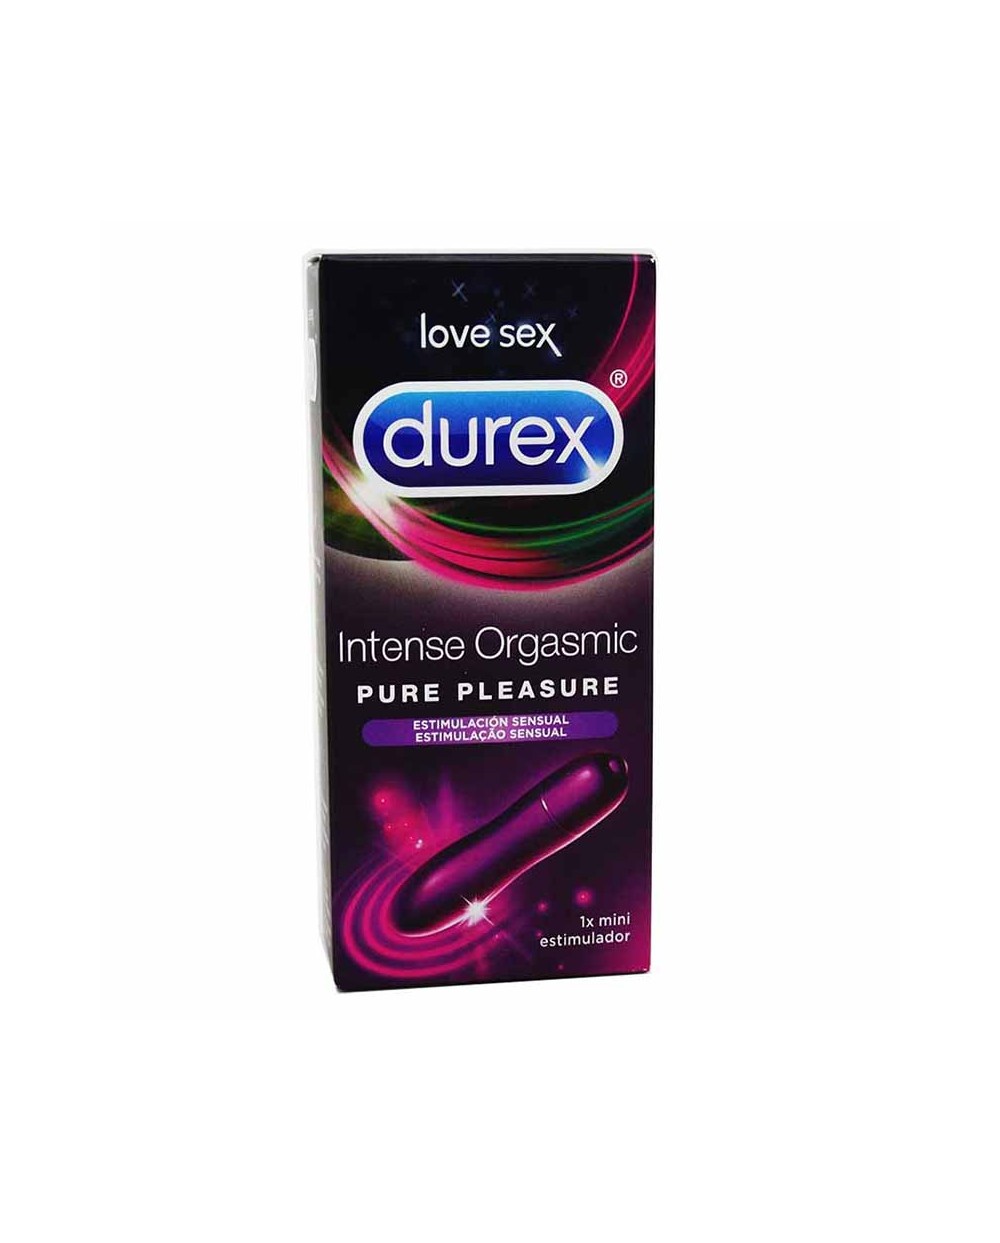 Estimulador Durex Intense Orgasmic Pure Pleasure Mini - 1 unidad